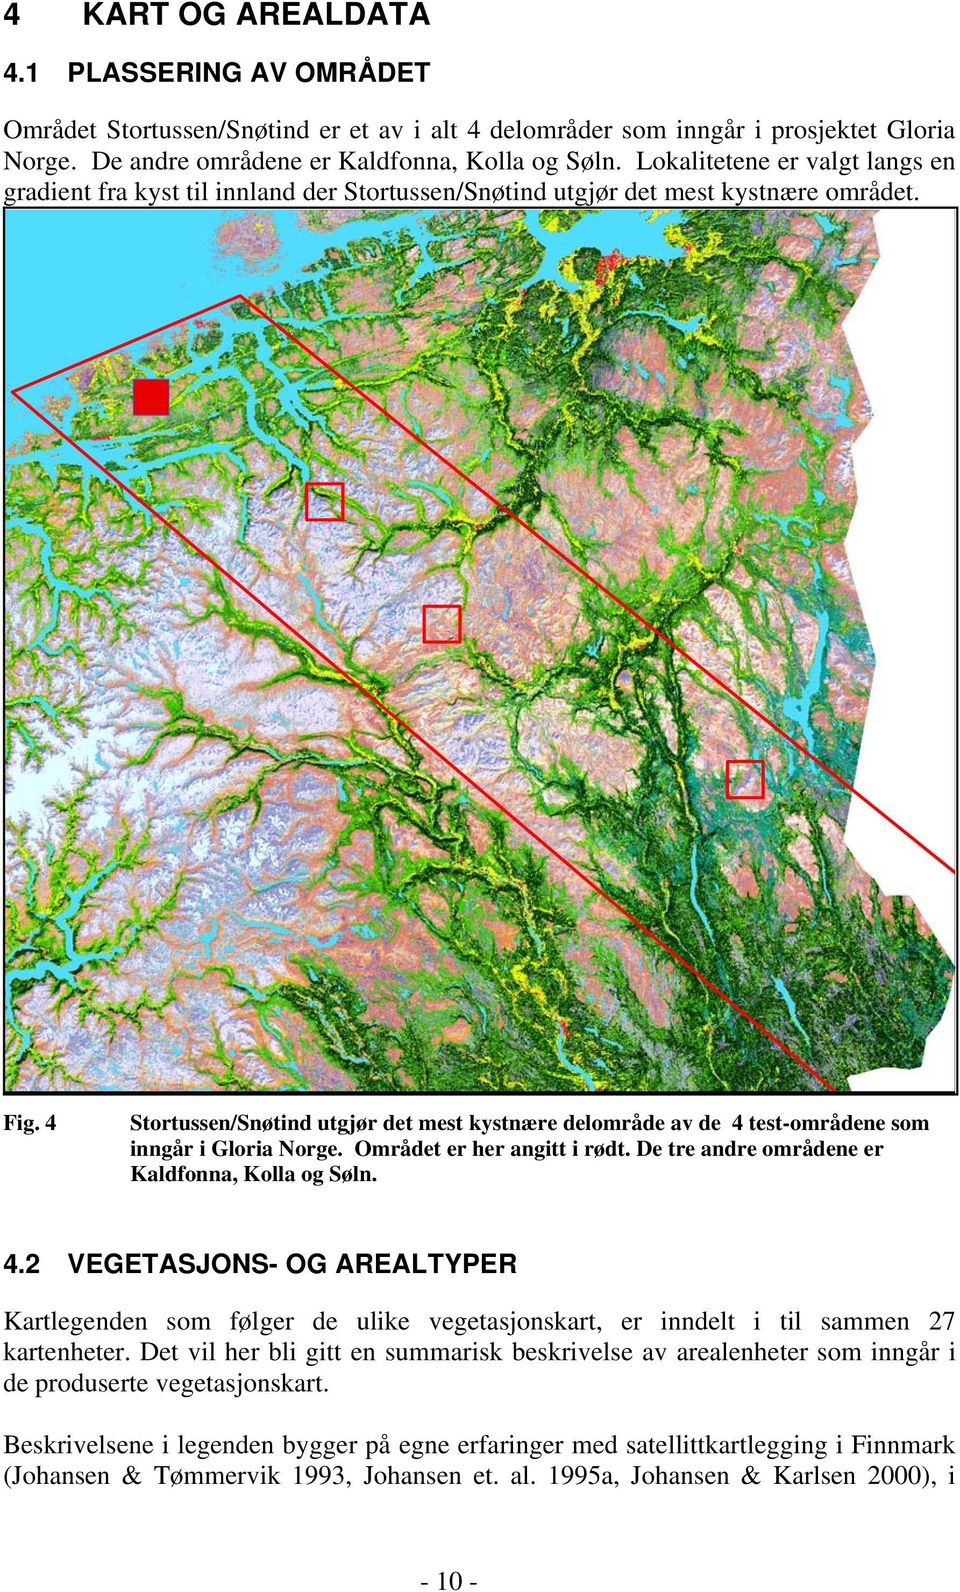 4 Stortussen/Snøtind utgjør det mest kystnære delområde av de 4 test-områdene som inngår i Gloria Norge. Området er her angitt i rødt. De tre andre områdene er Kaldfonna, Kolla og Søln. 4.2 VEGETASJONS- OG AREALTYPER Kartlegenden som følger de ulike vegetasjonskart, er inndelt i til sammen 27 kartenheter.